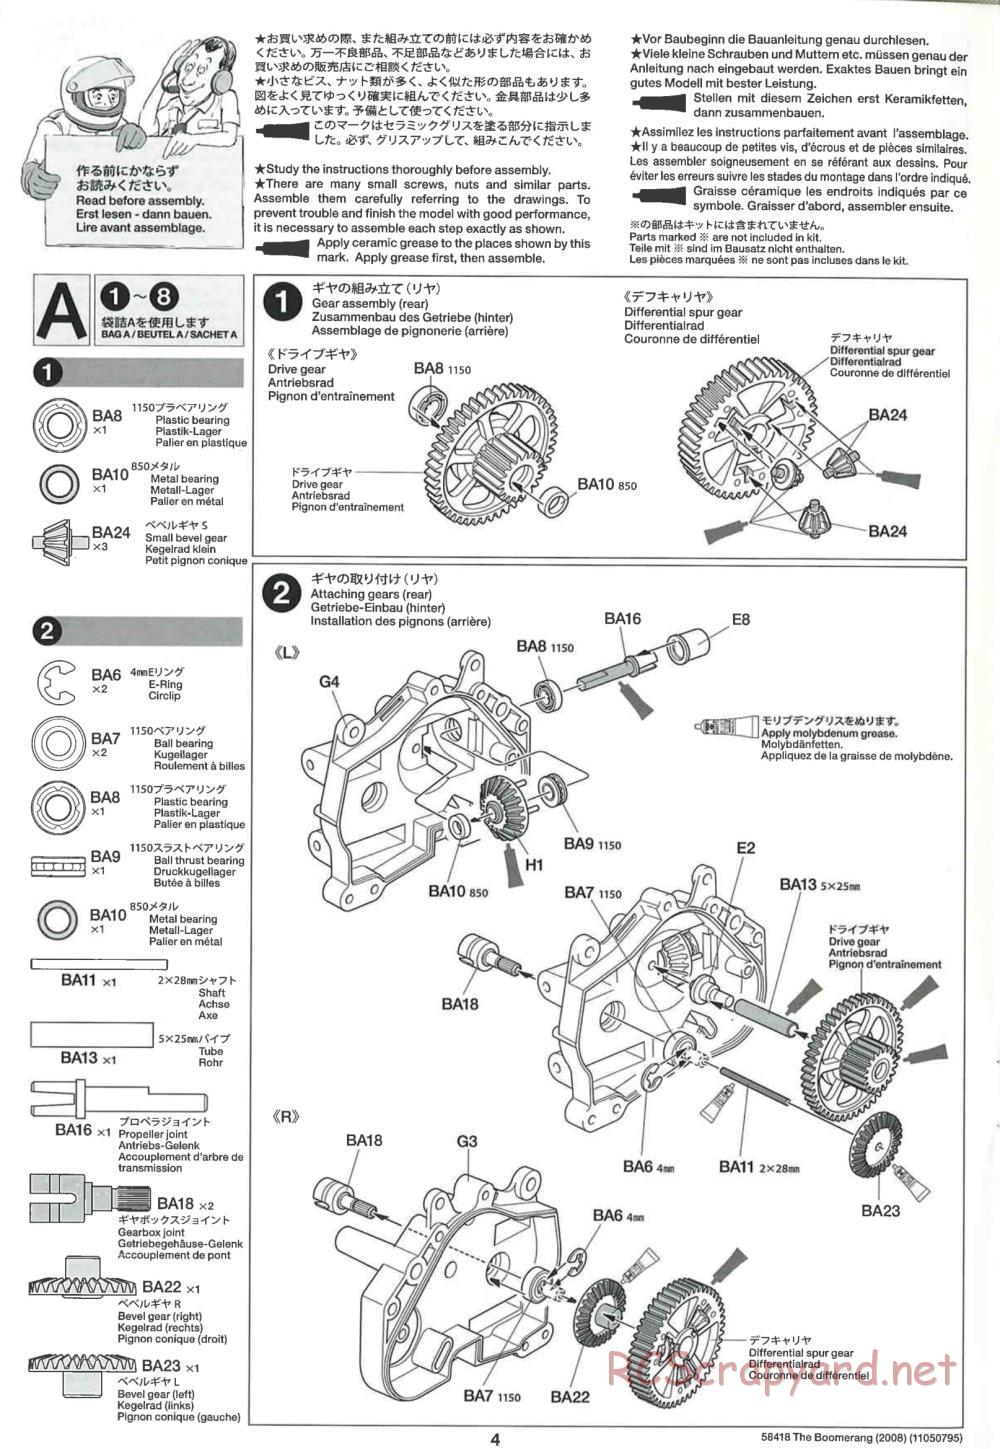 Tamiya - The Boomerang 2008 Chassis - Manual - Page 4